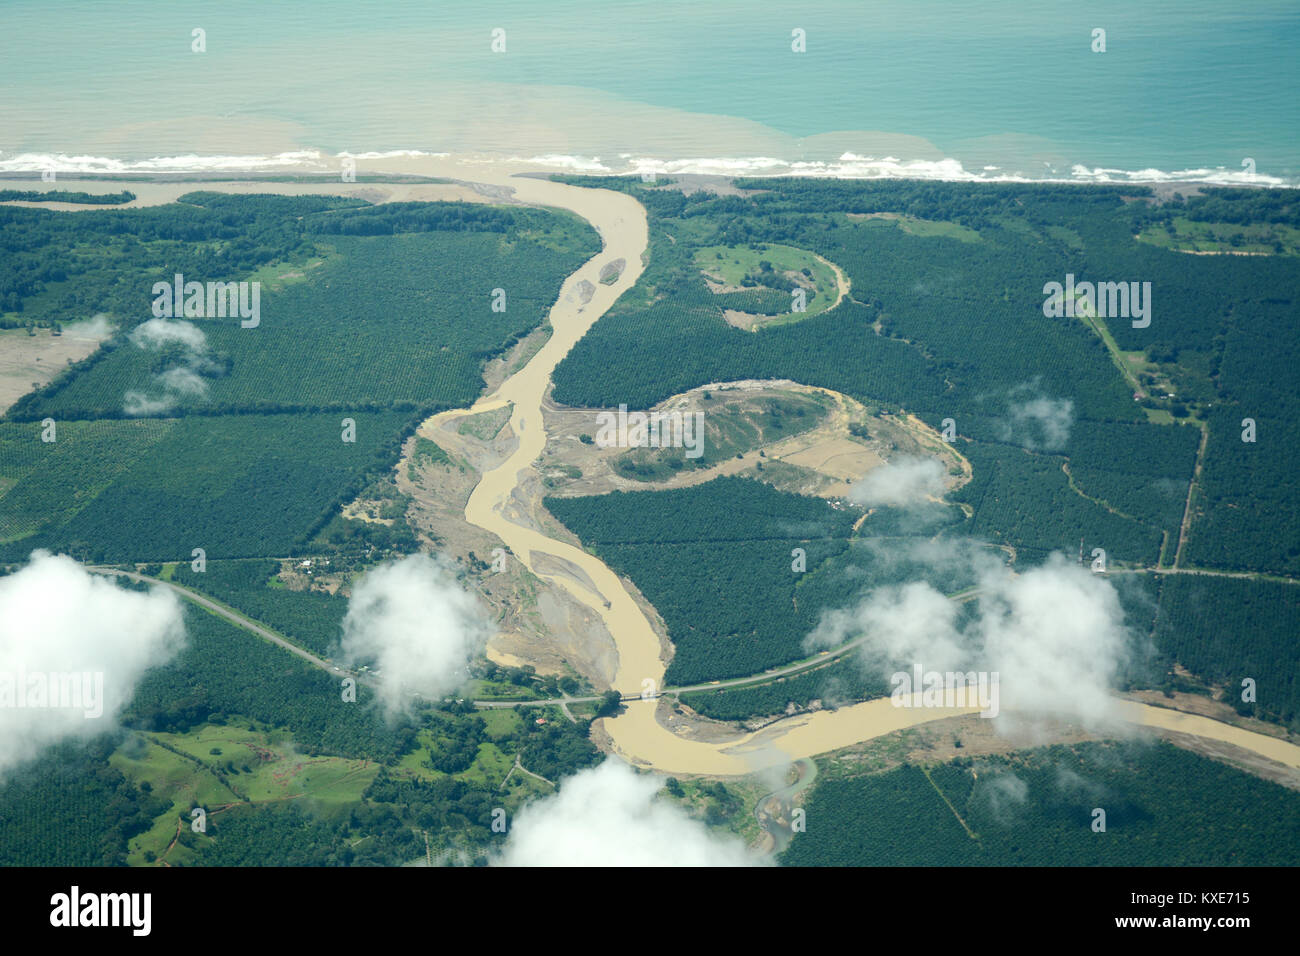 Une vue aérienne de l'embouchure du Rio réunion Savegre la côte du Pacifique, dans la province de Puntarenas, dans le sud du Costa Rica. Banque D'Images